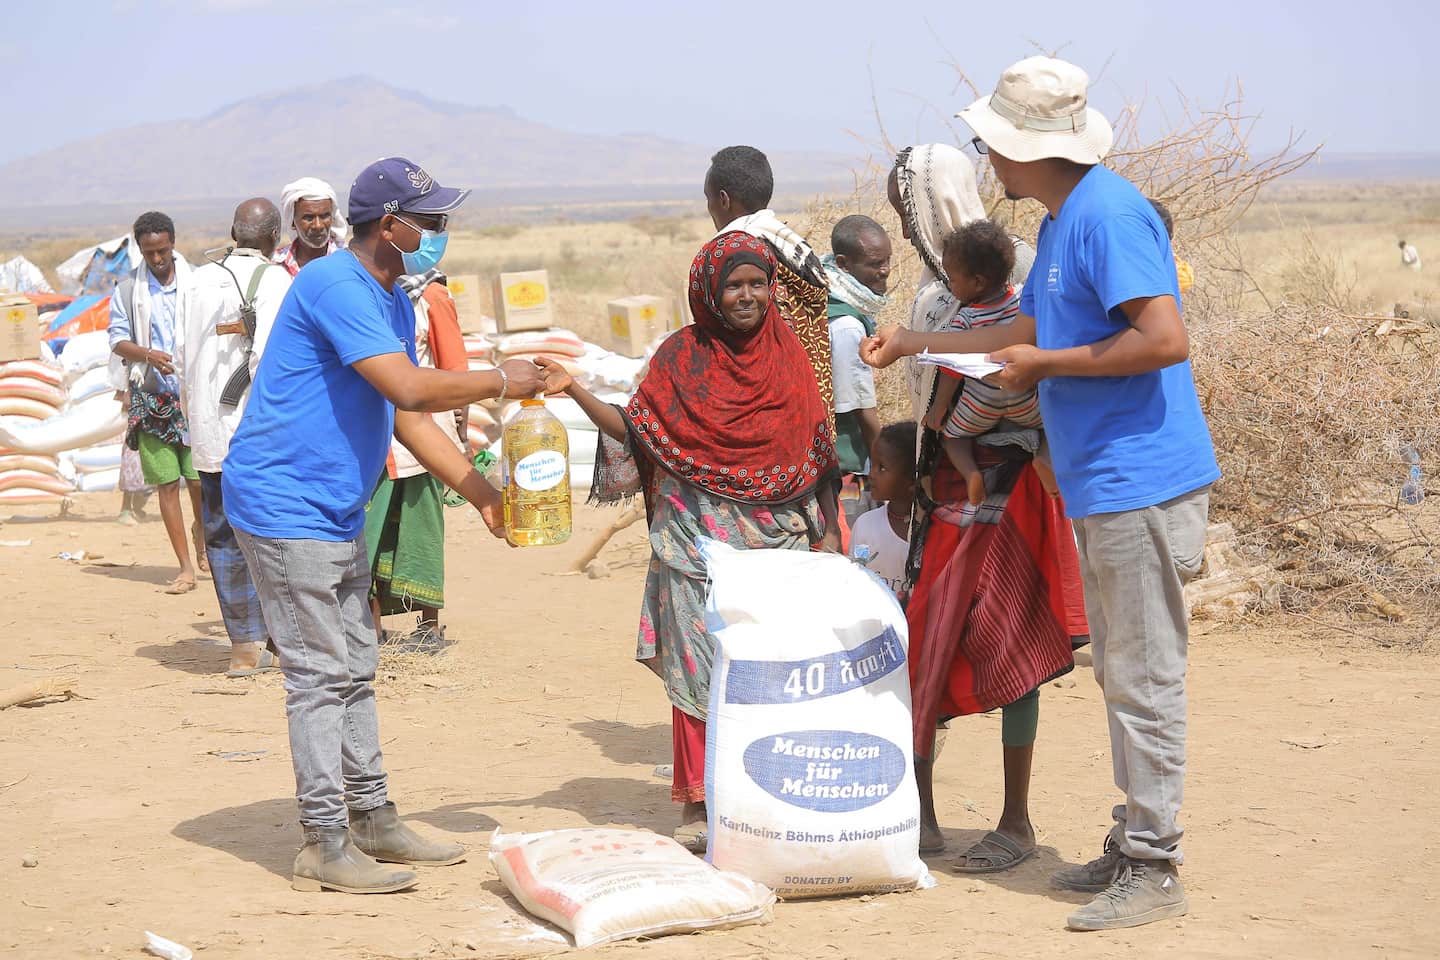 Eine Familie erhält Öl und Lebensmittel im rahmen der Nothilfe von Menschen für Menschen in Äthiopien